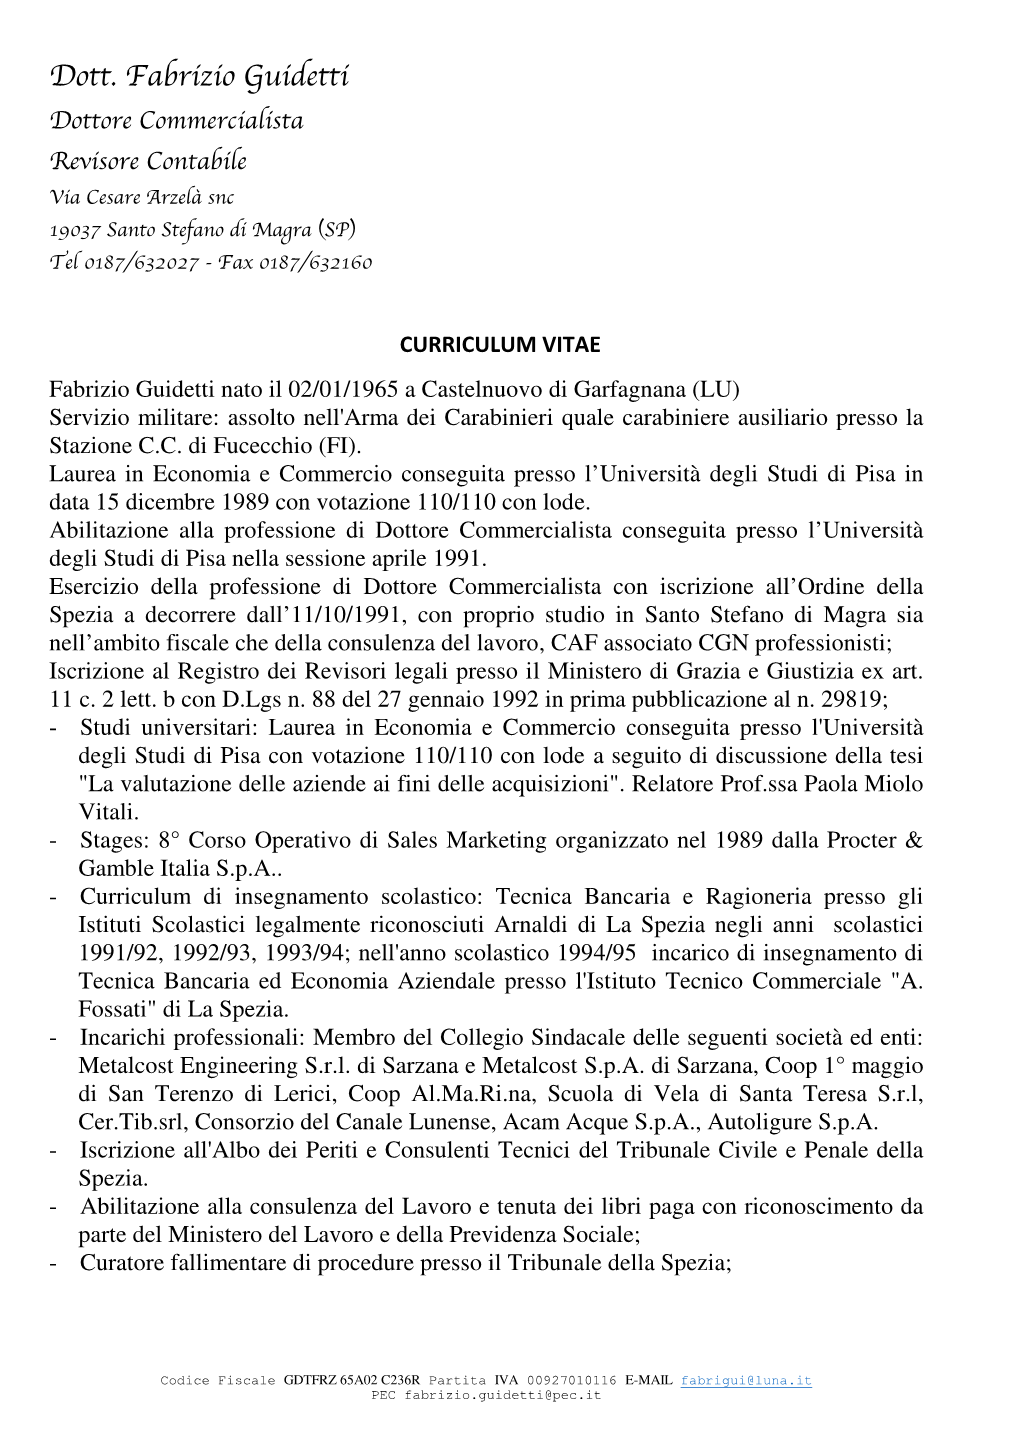 Curriculum Vitae FG 31-05